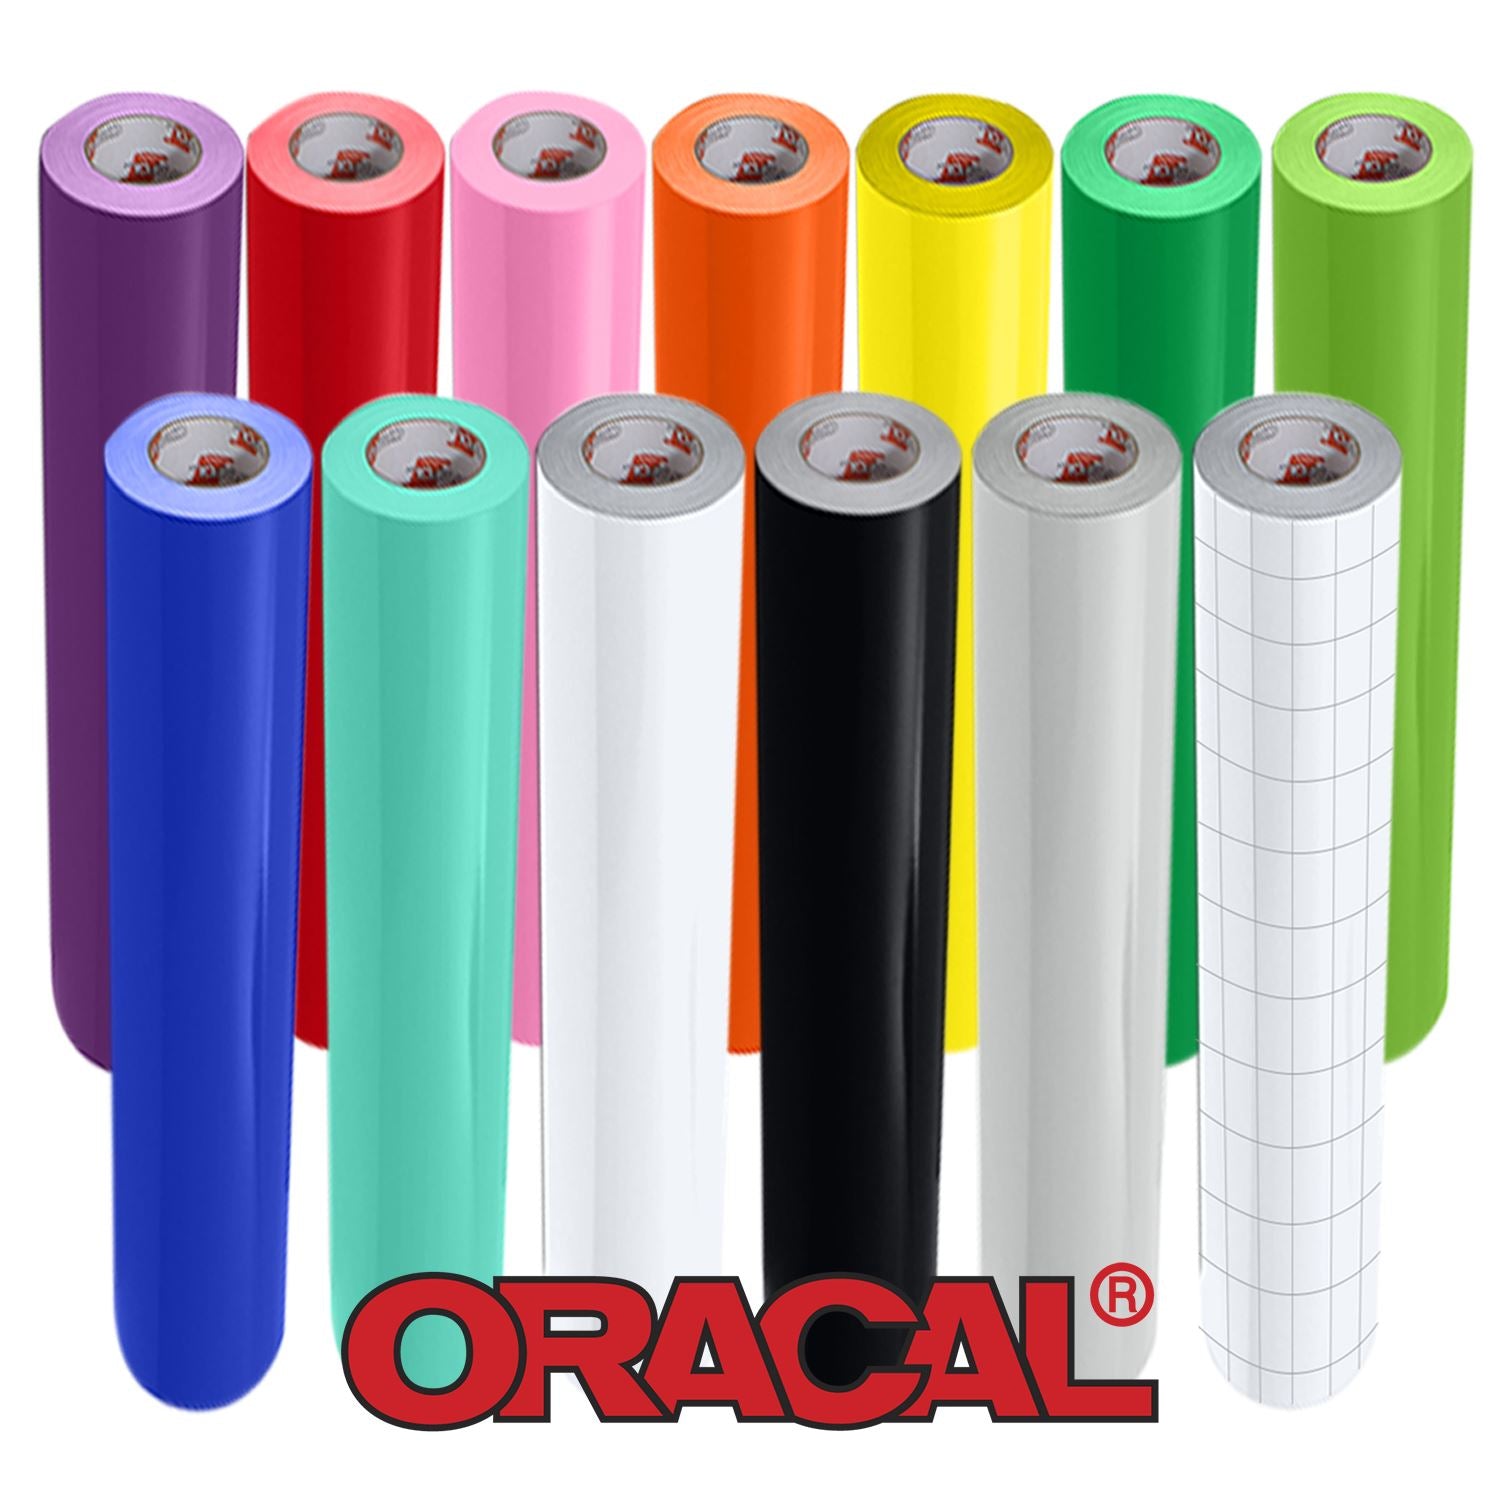 Oracal Vinyl 651 24 x 6 ft Rolls - 12 Pack